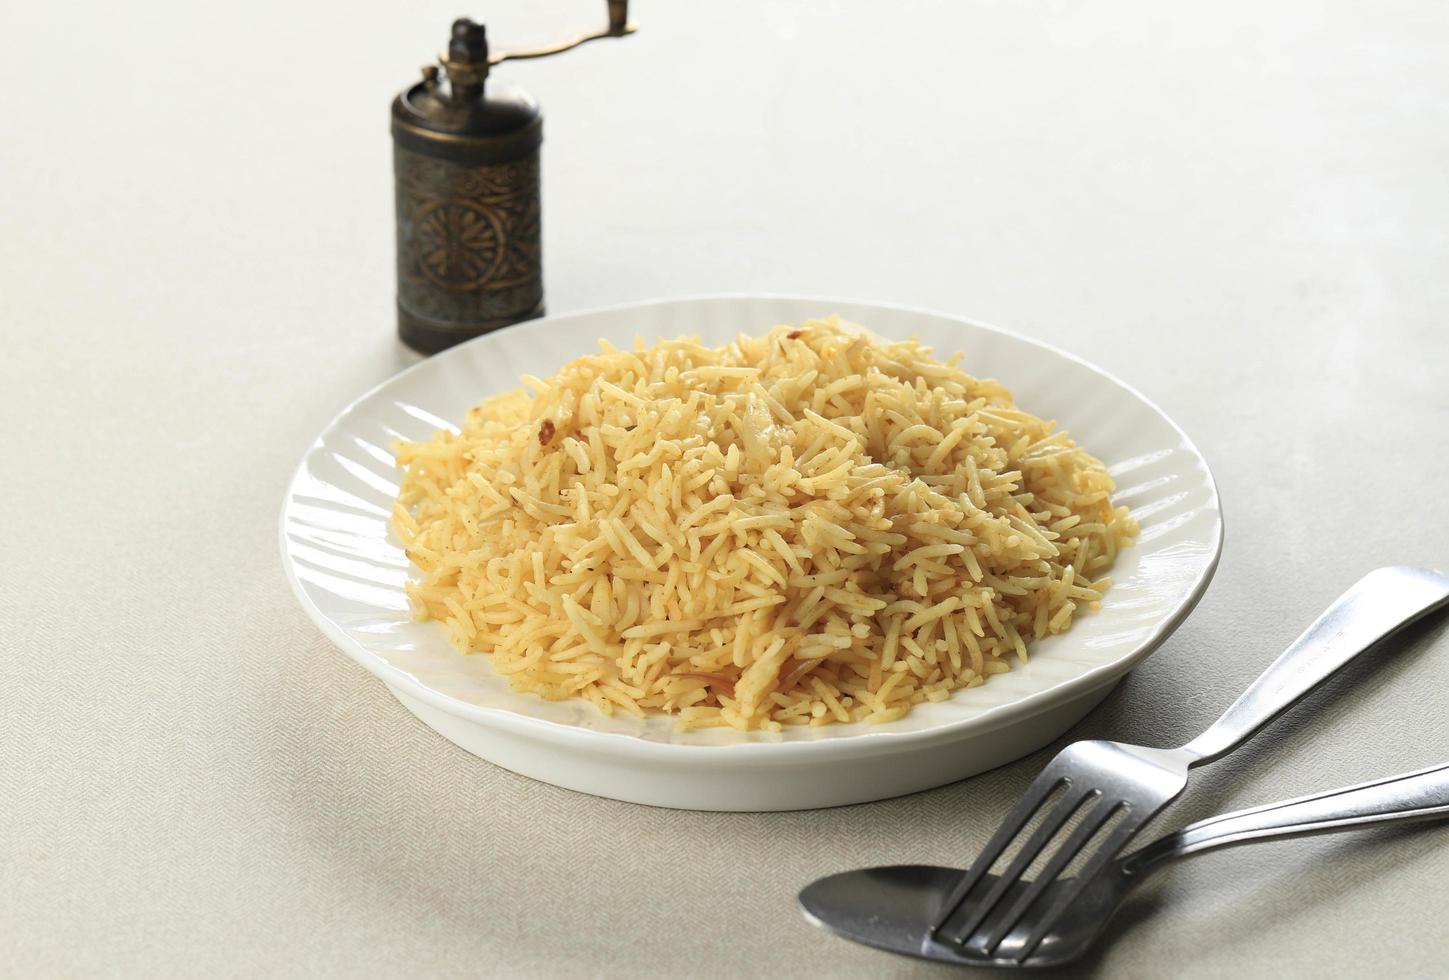 arroz árabe kabsa, comida do ramadã no oriente médio. foto